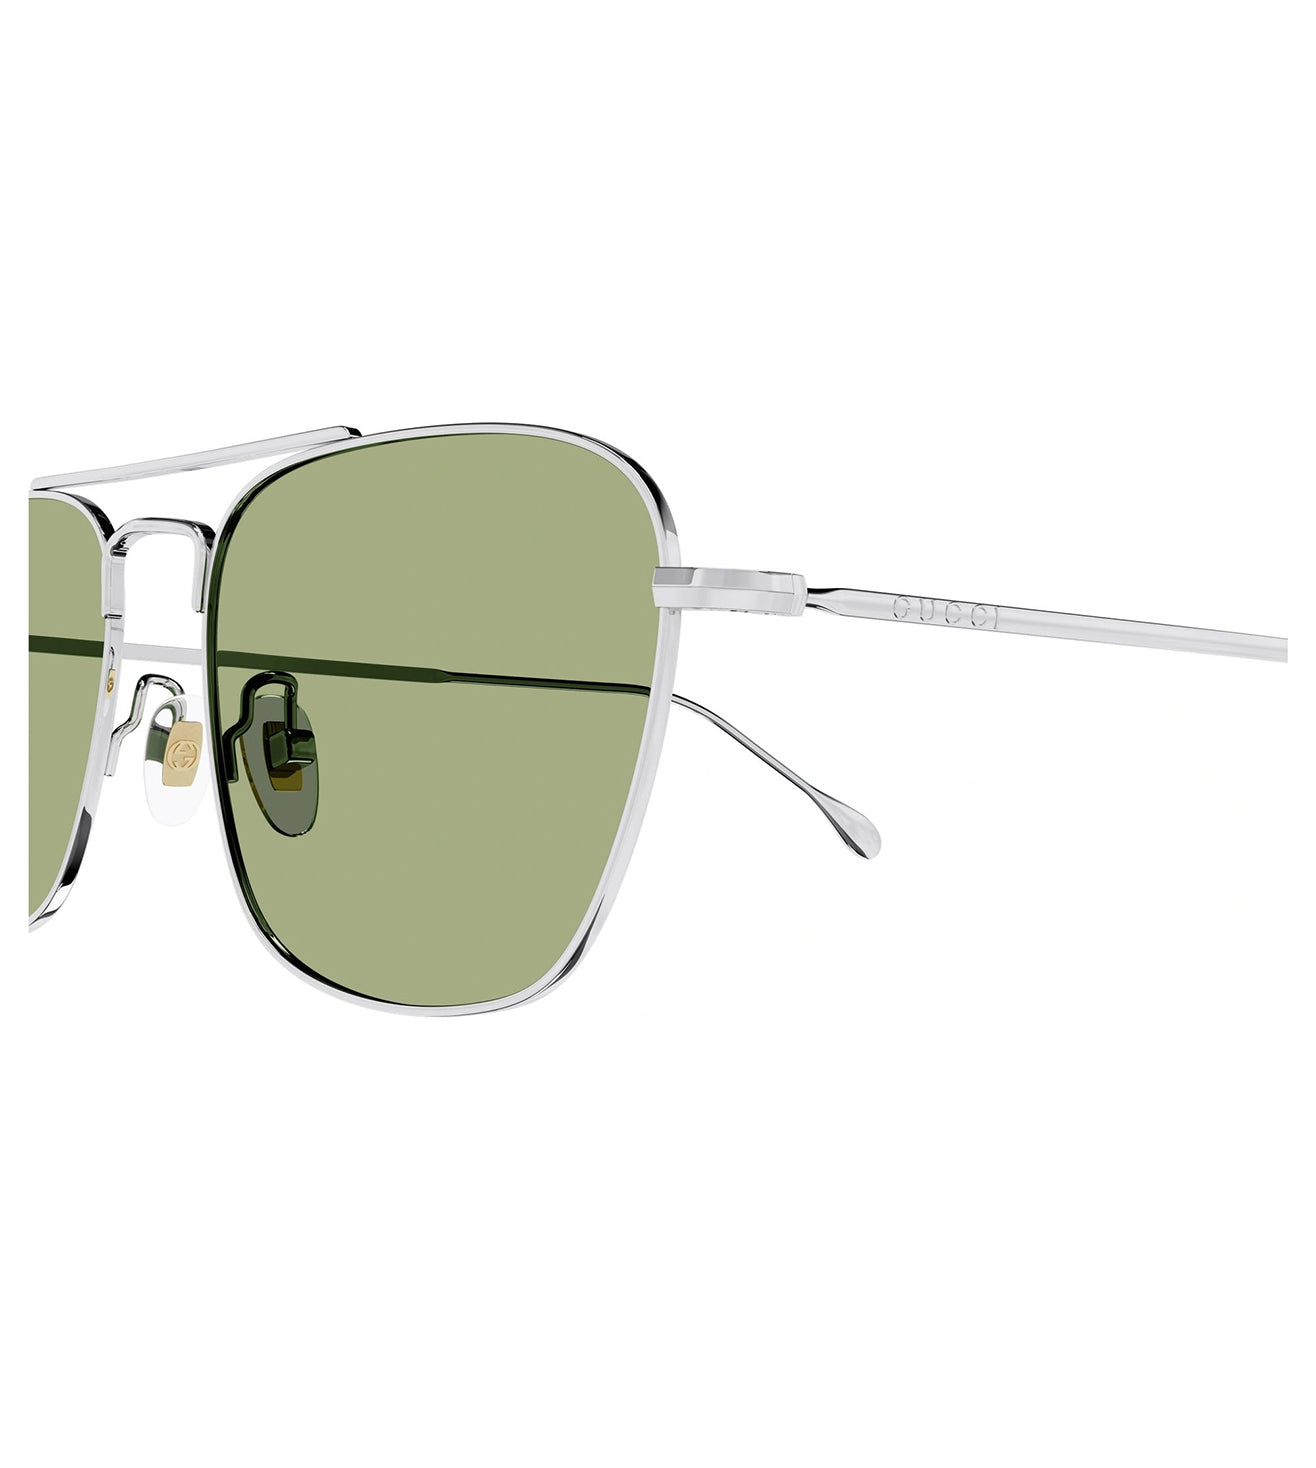 Gucci Men's Green Aviator Sunglasses